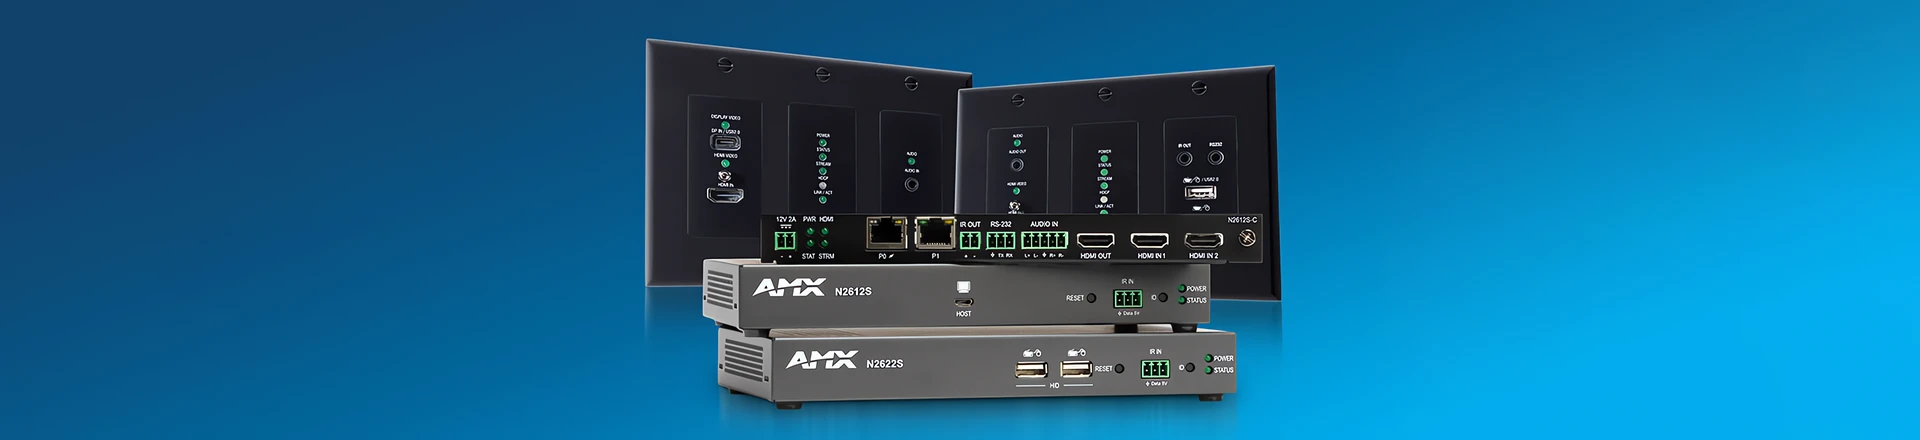 AMX przedstawia enkodery i dekodery SVSI serii N2600, 4K60 4:4:4